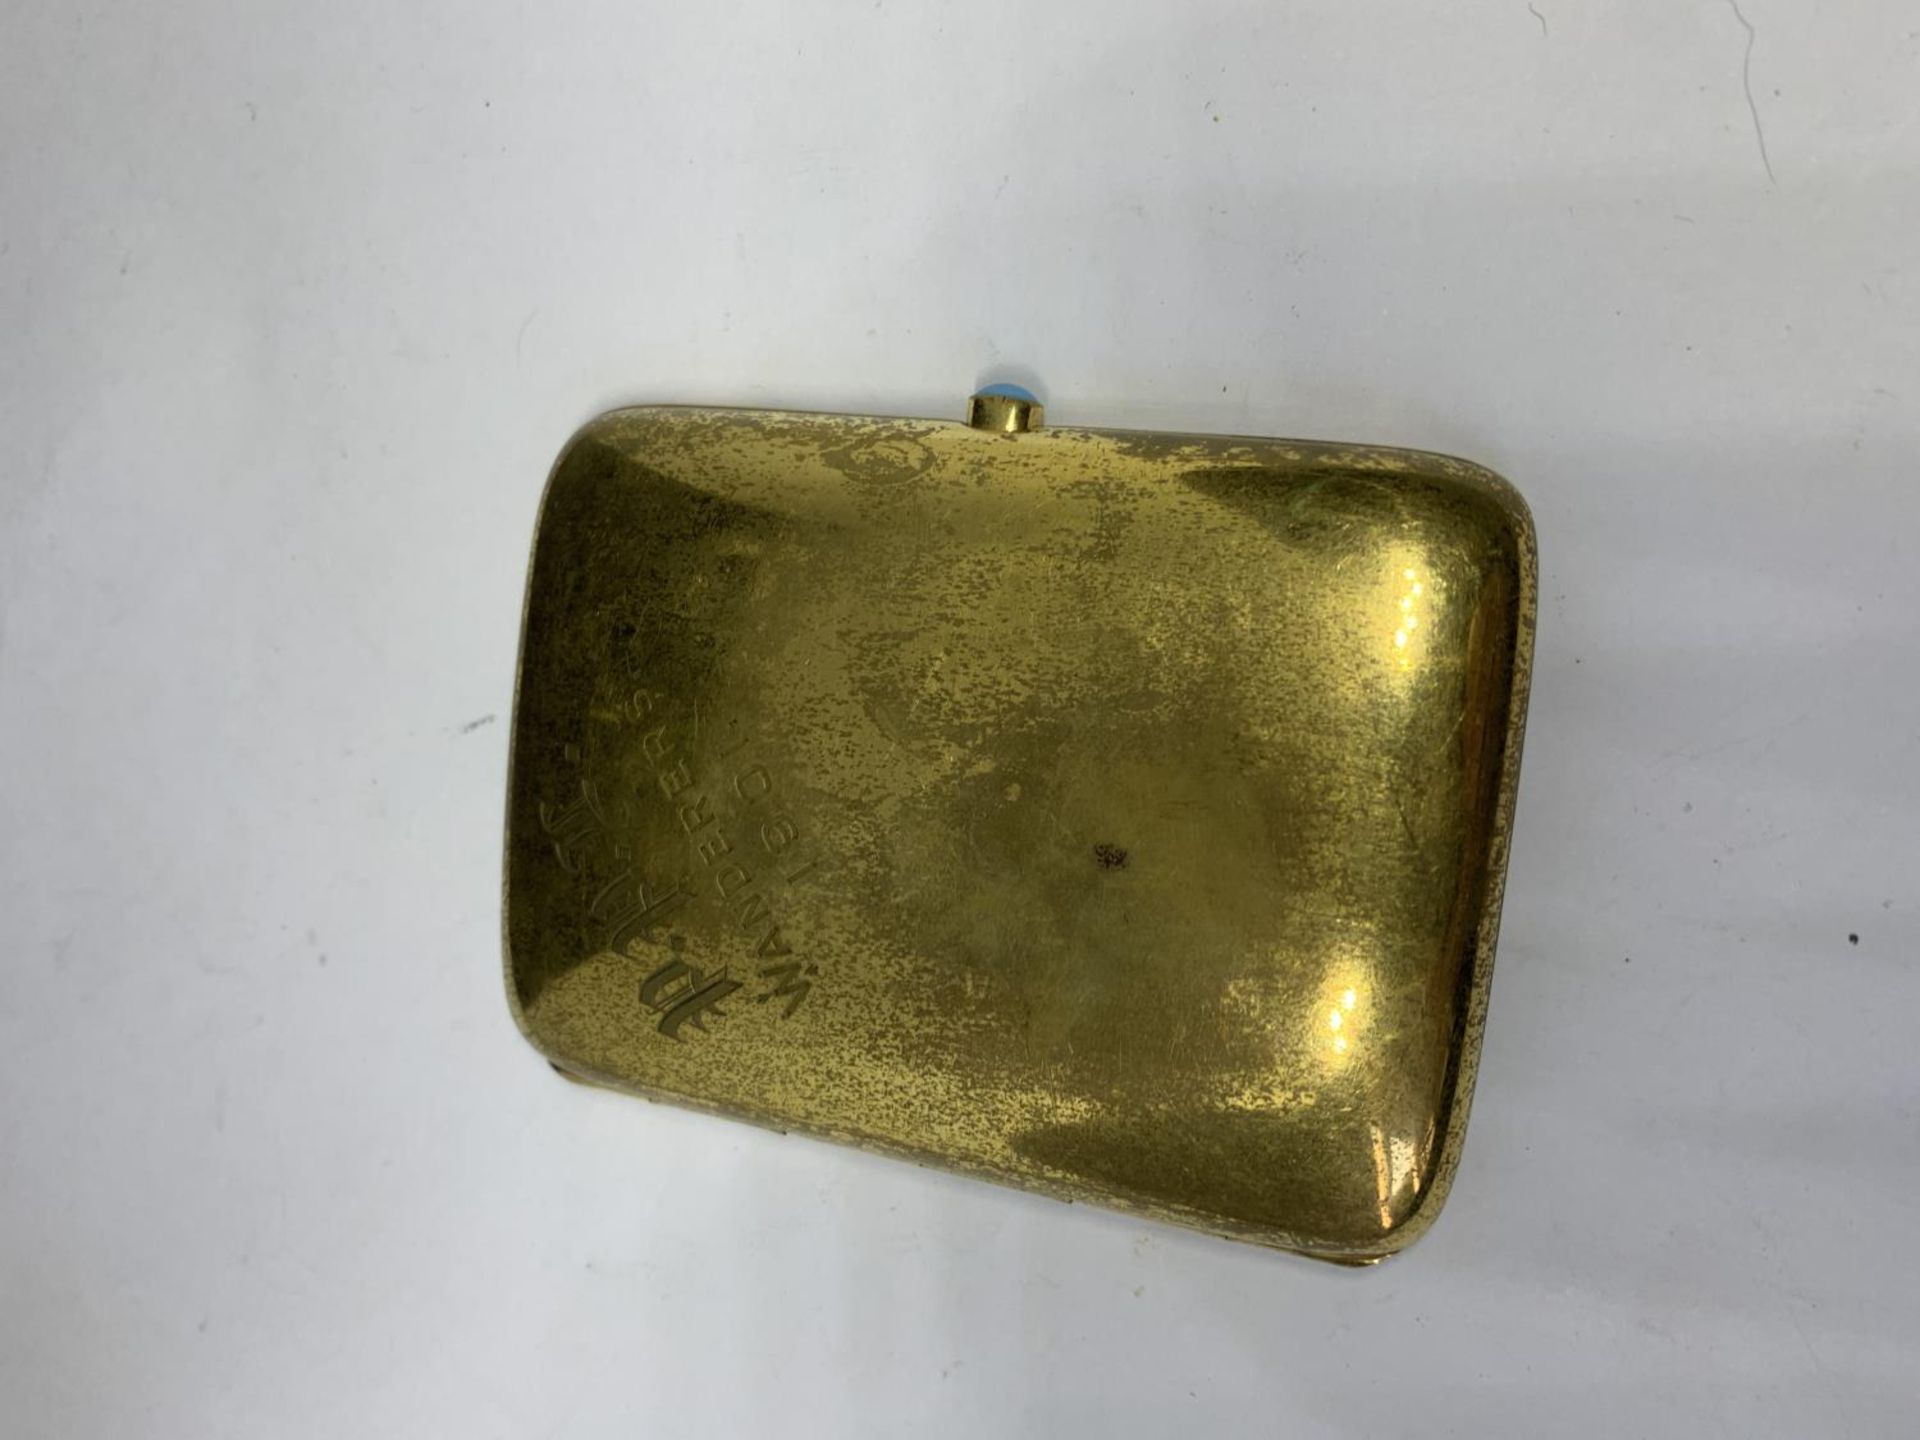 AN 18 CARAT GOLD FILLED CIGARETTE CASE ENGRAVED 1901